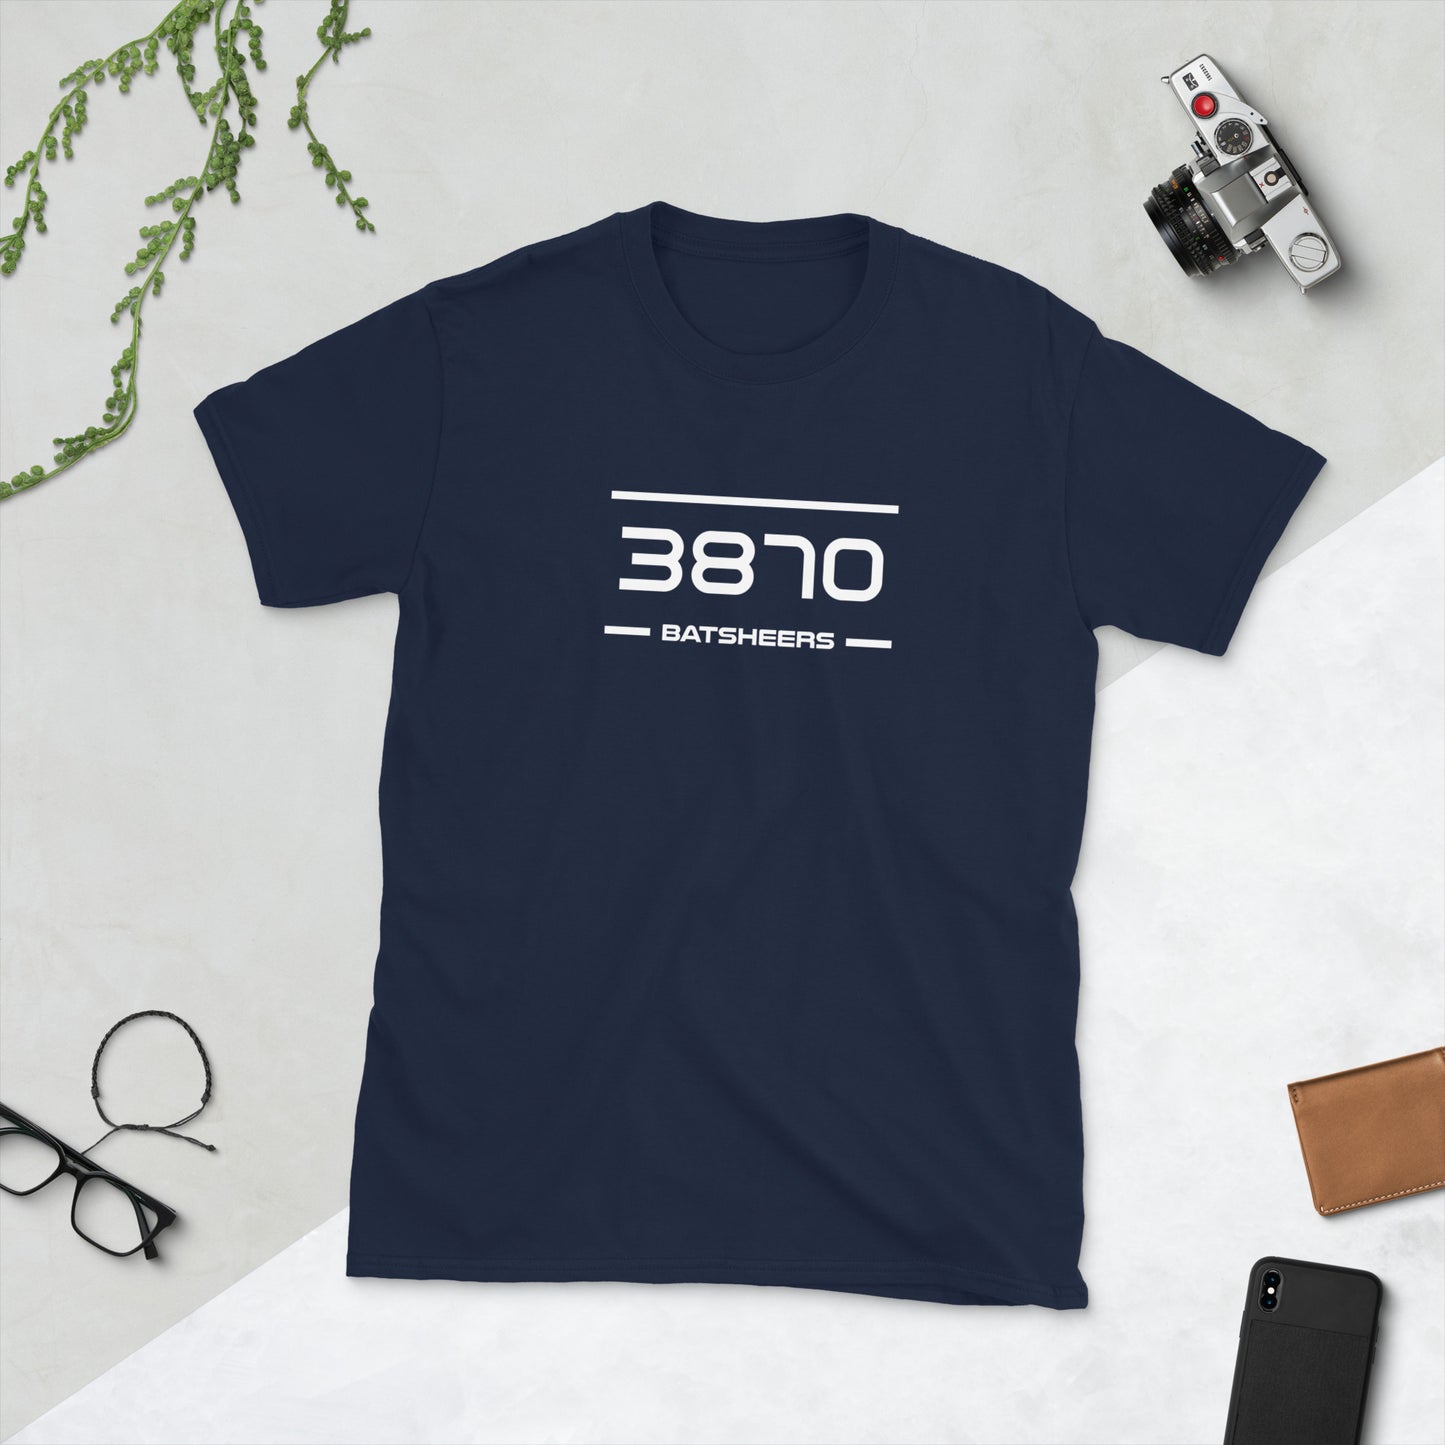 Tshirt - 3870 - Batsheers